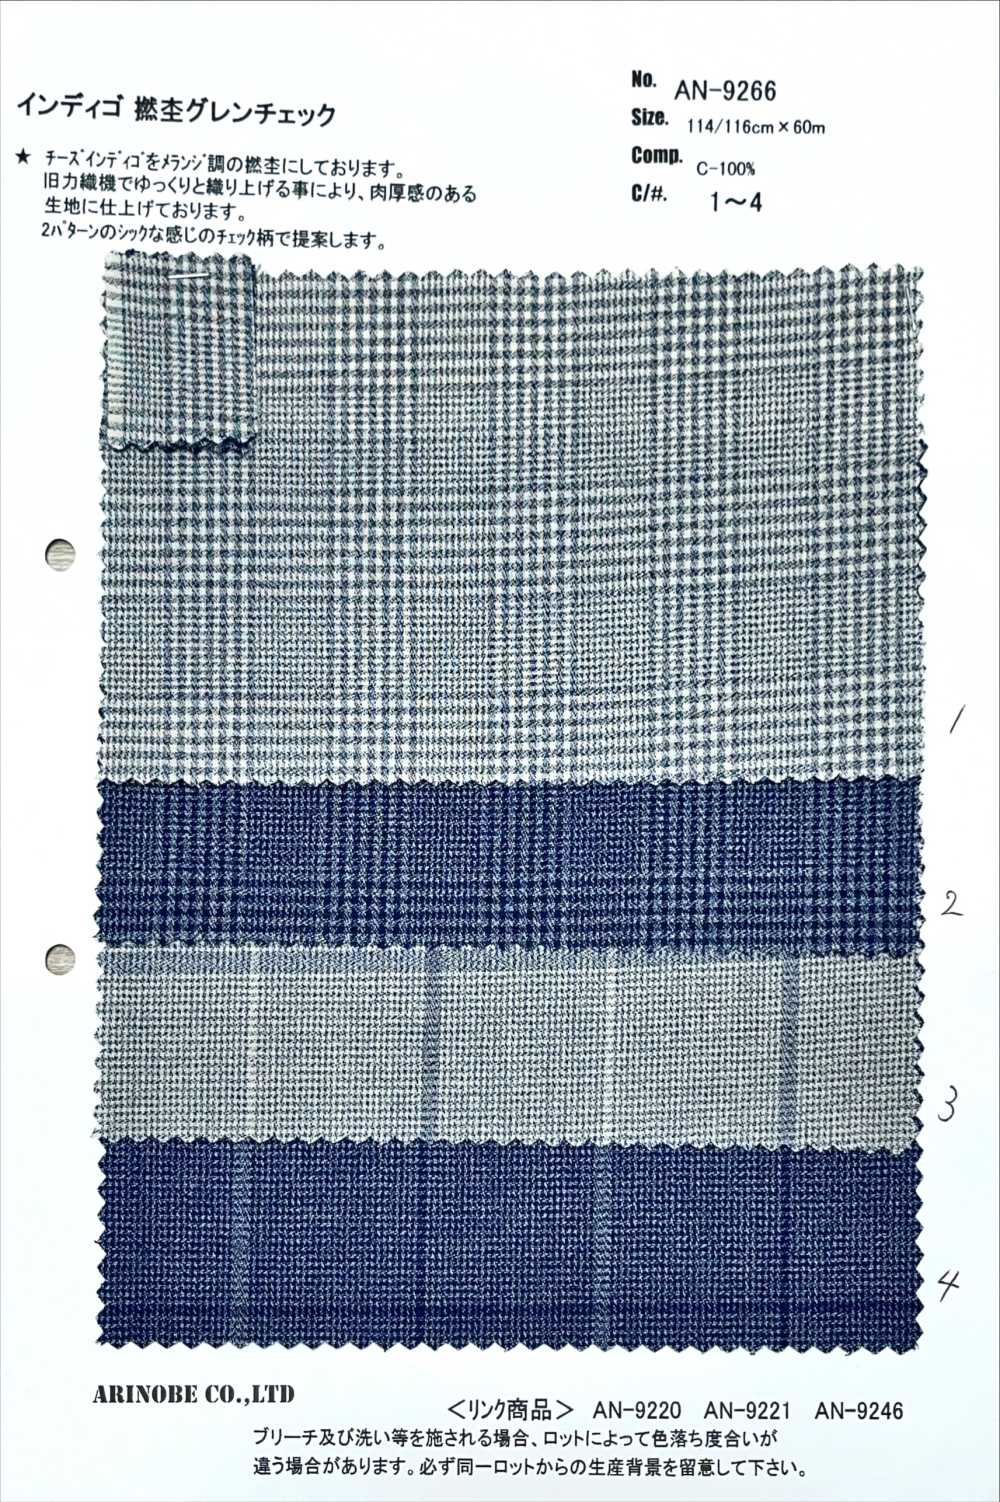 AN-9266 Cheque De Caña De Brezo Torcido índigo[Fabrica Textil] ARINOBE CO., LTD.